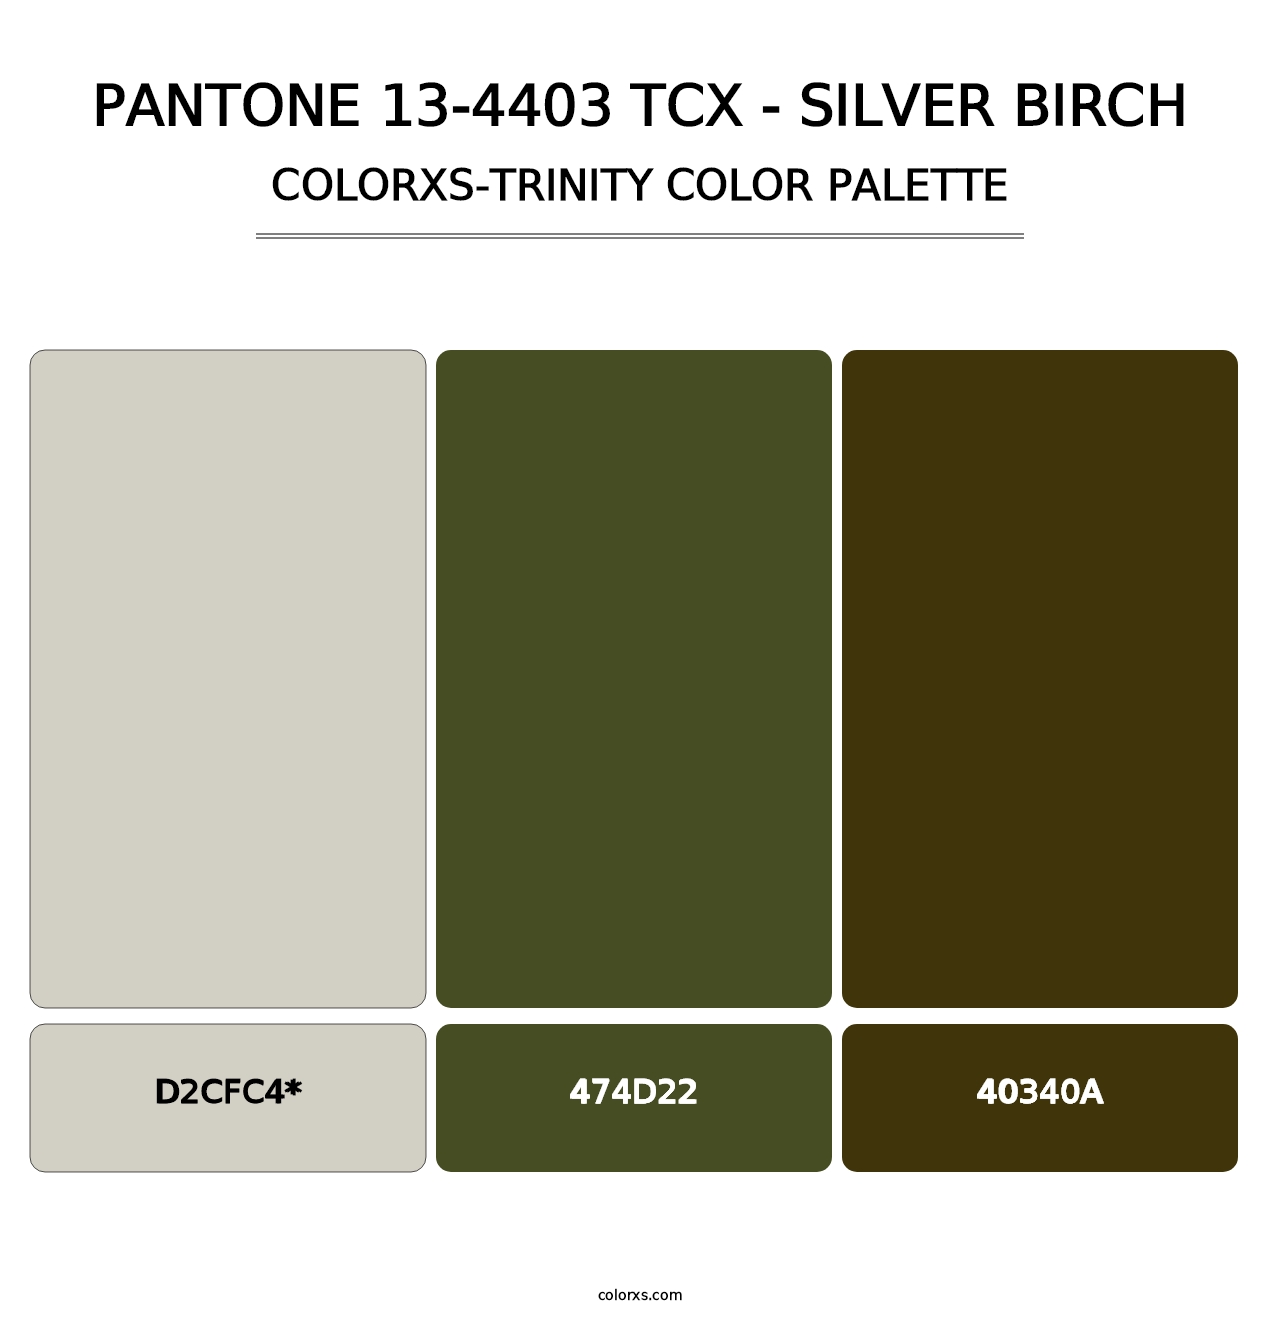 PANTONE 13-4403 TCX - Silver Birch - Colorxs Trinity Palette